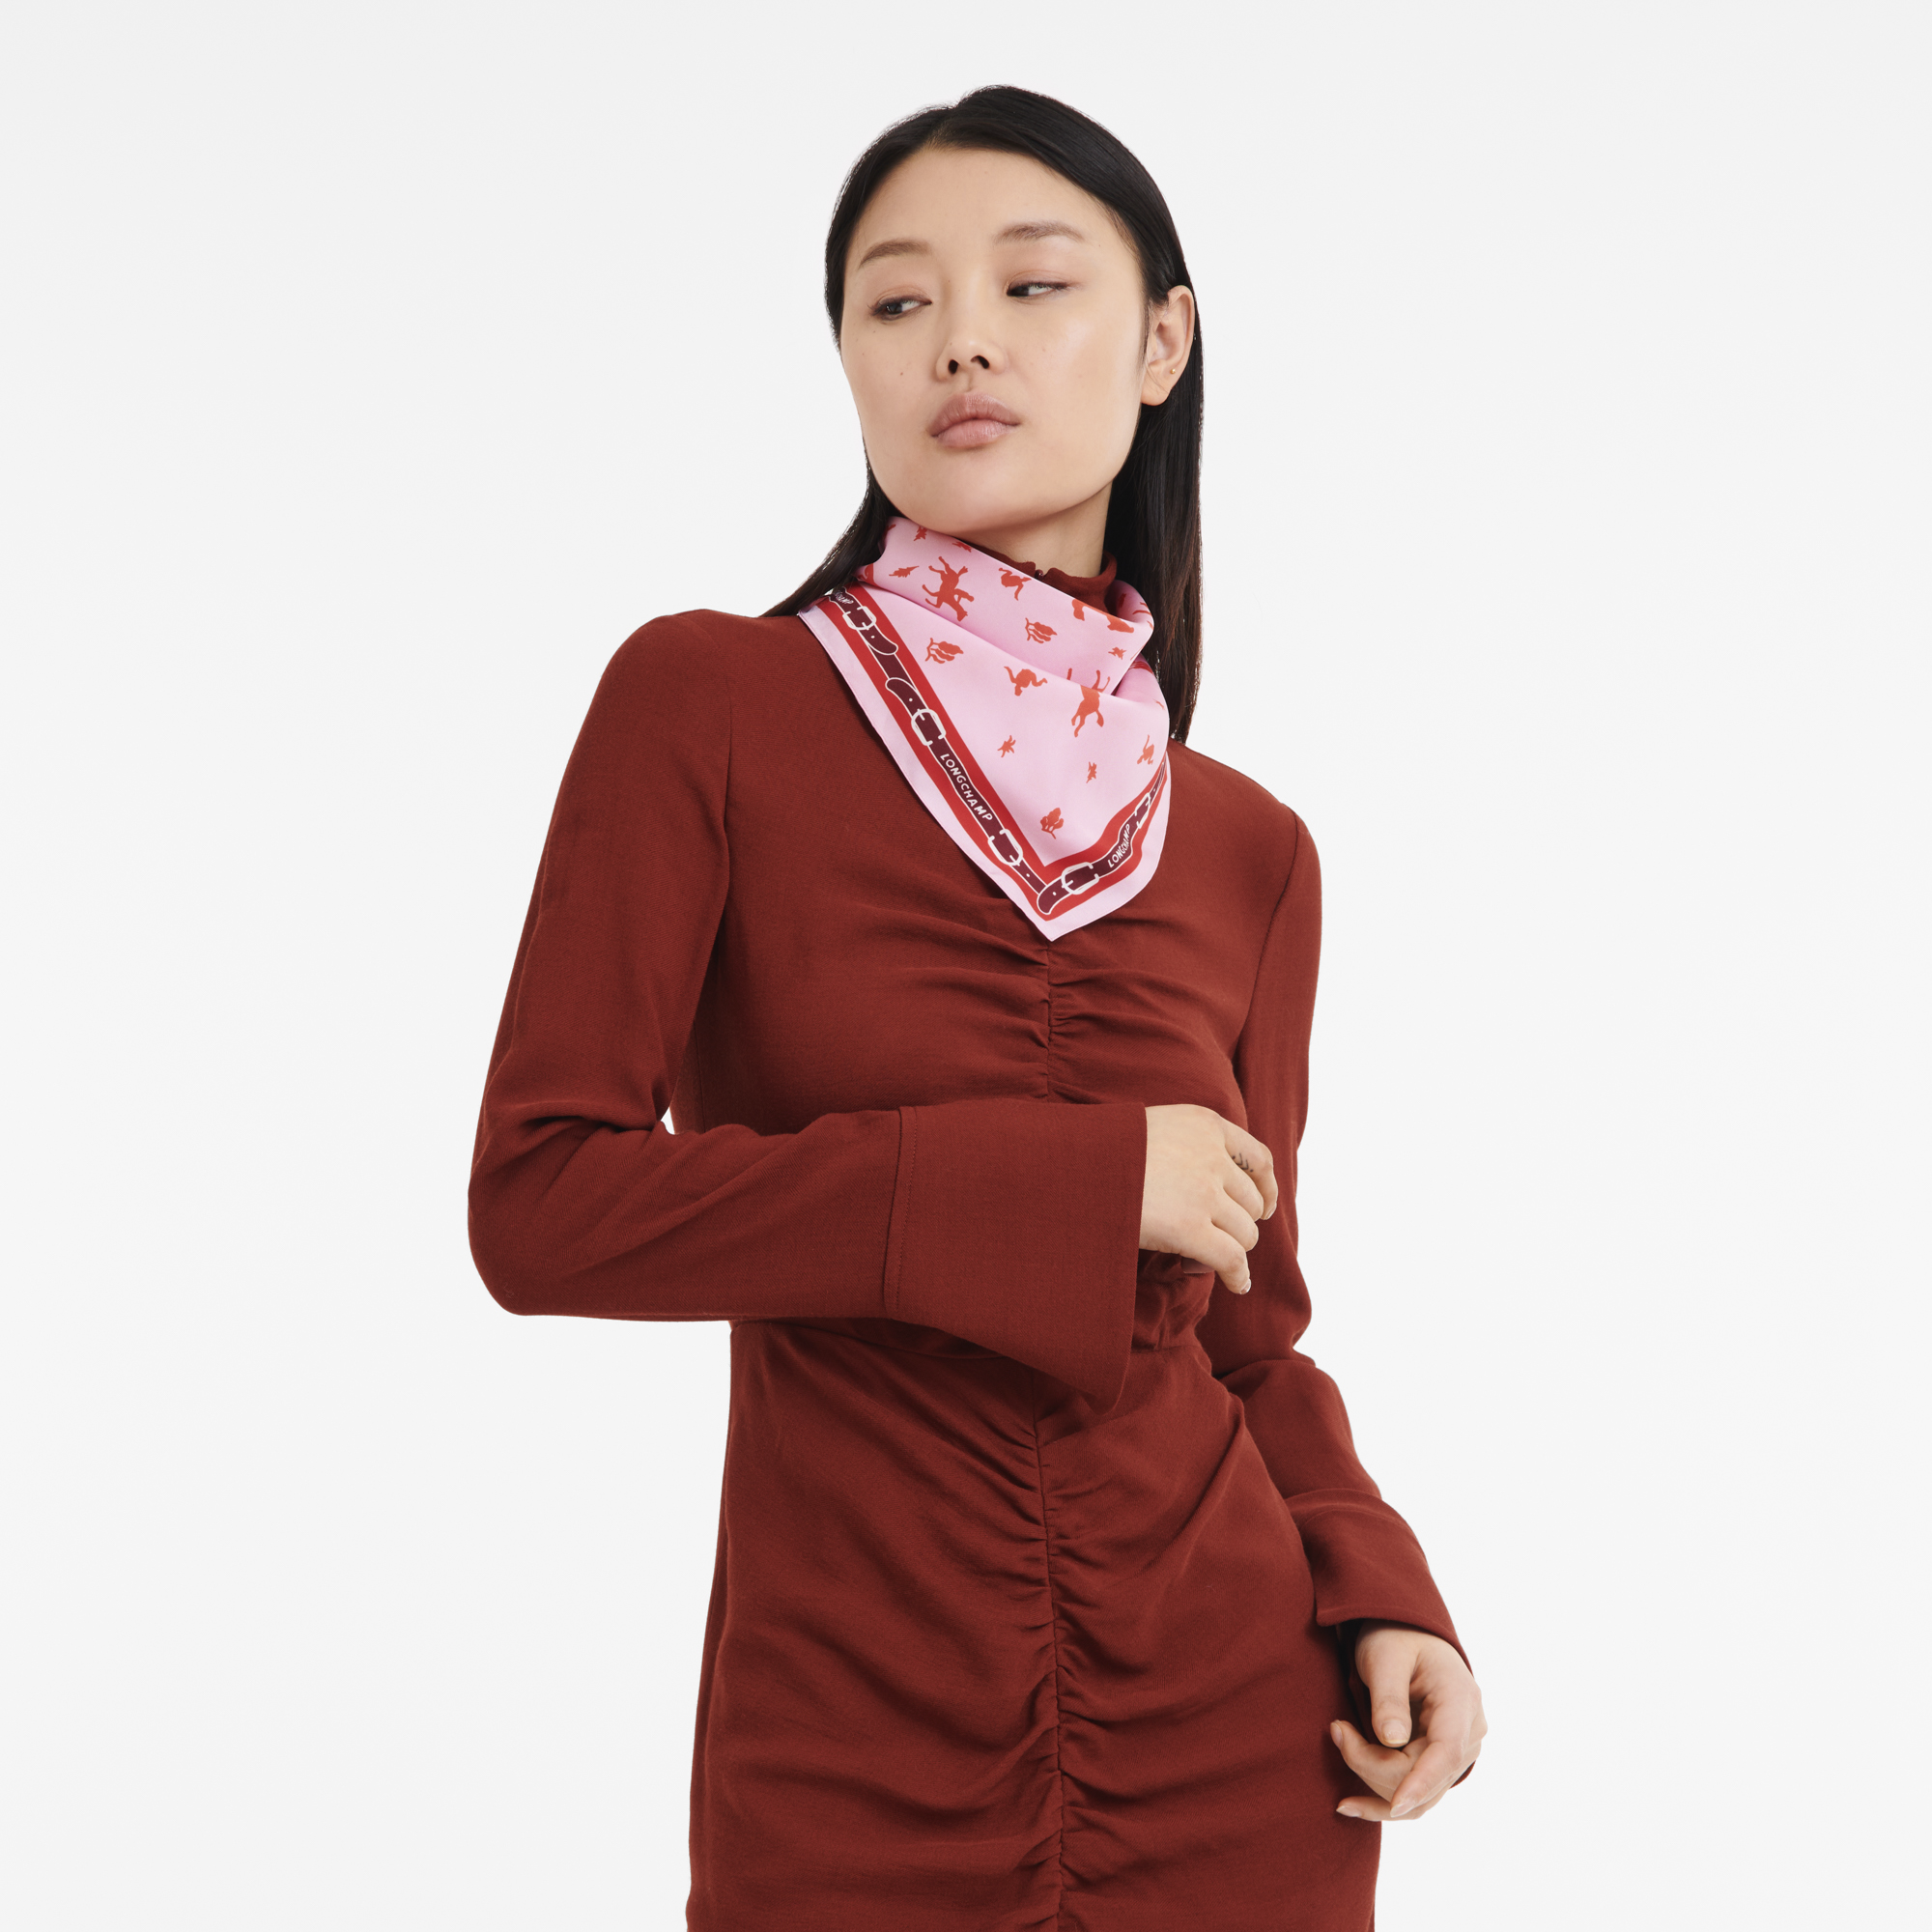 Longchamp 80's Silk scarf 50, Pink/Orange